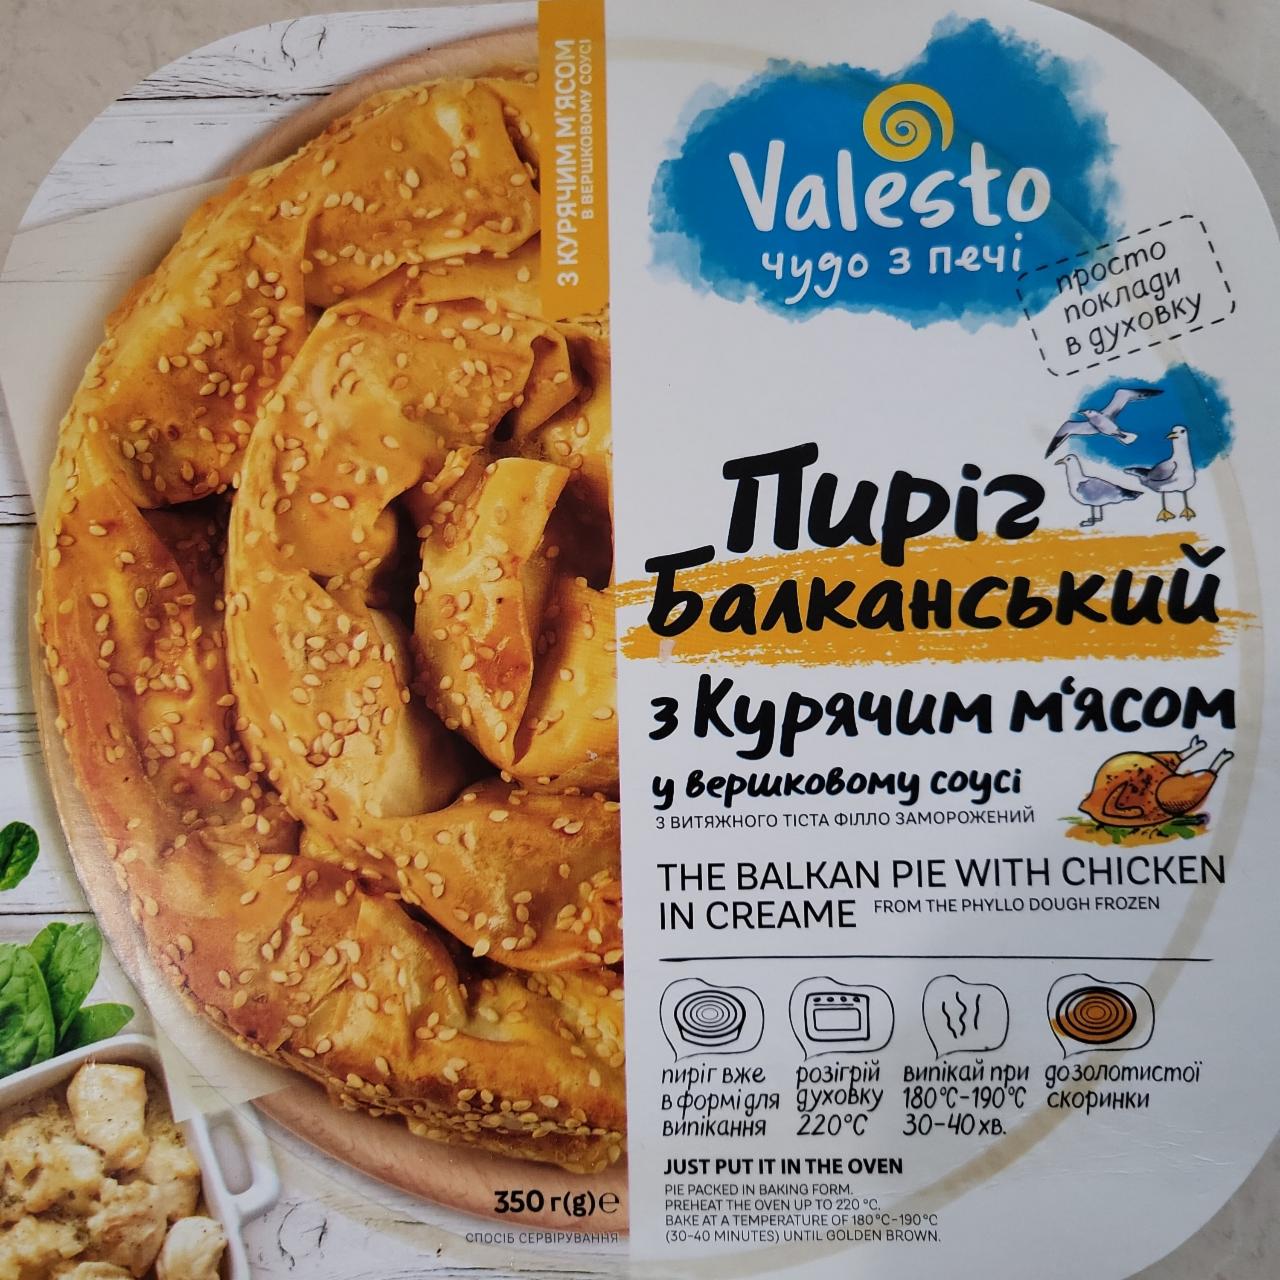 Фото - Пирог Балканський куриное мясо Valesto